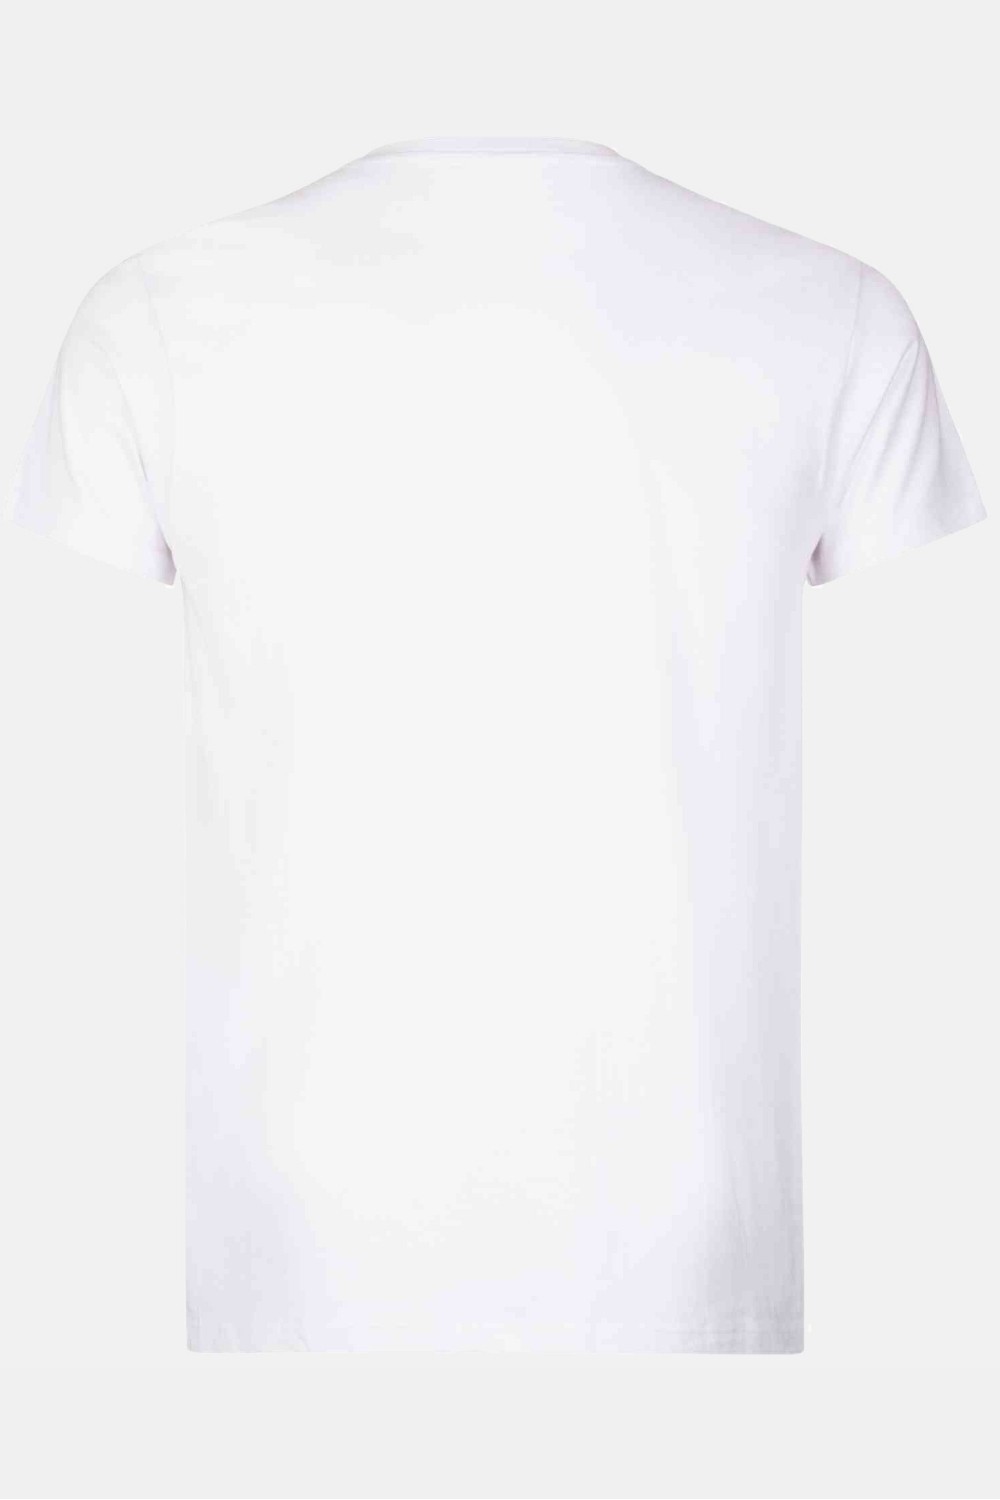 Street camiseta blanca hombre - Patrice Catanzaro Página Oficial